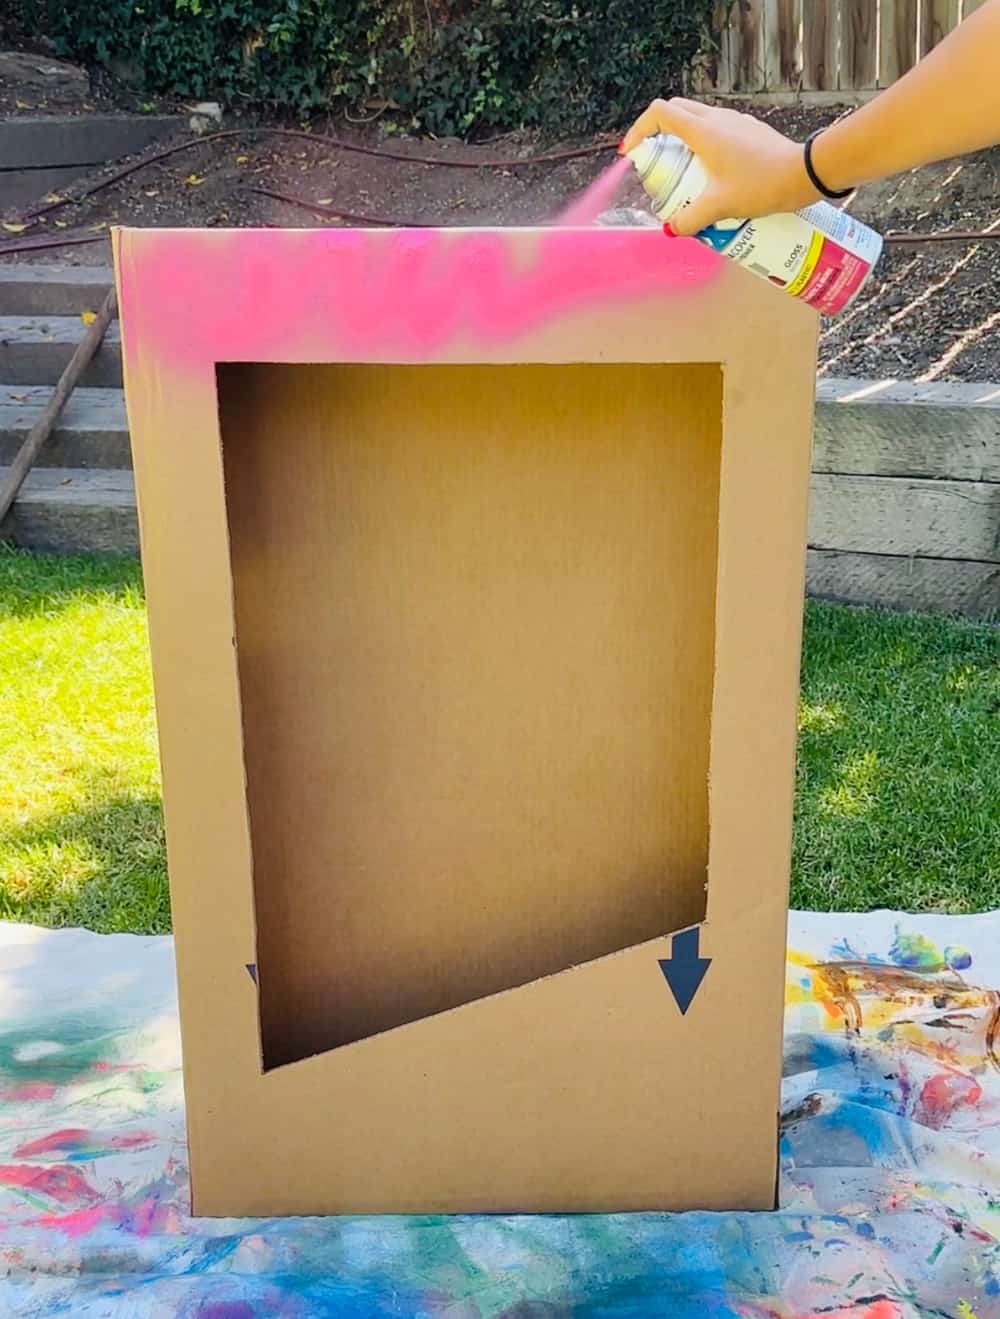 spray painting box pink